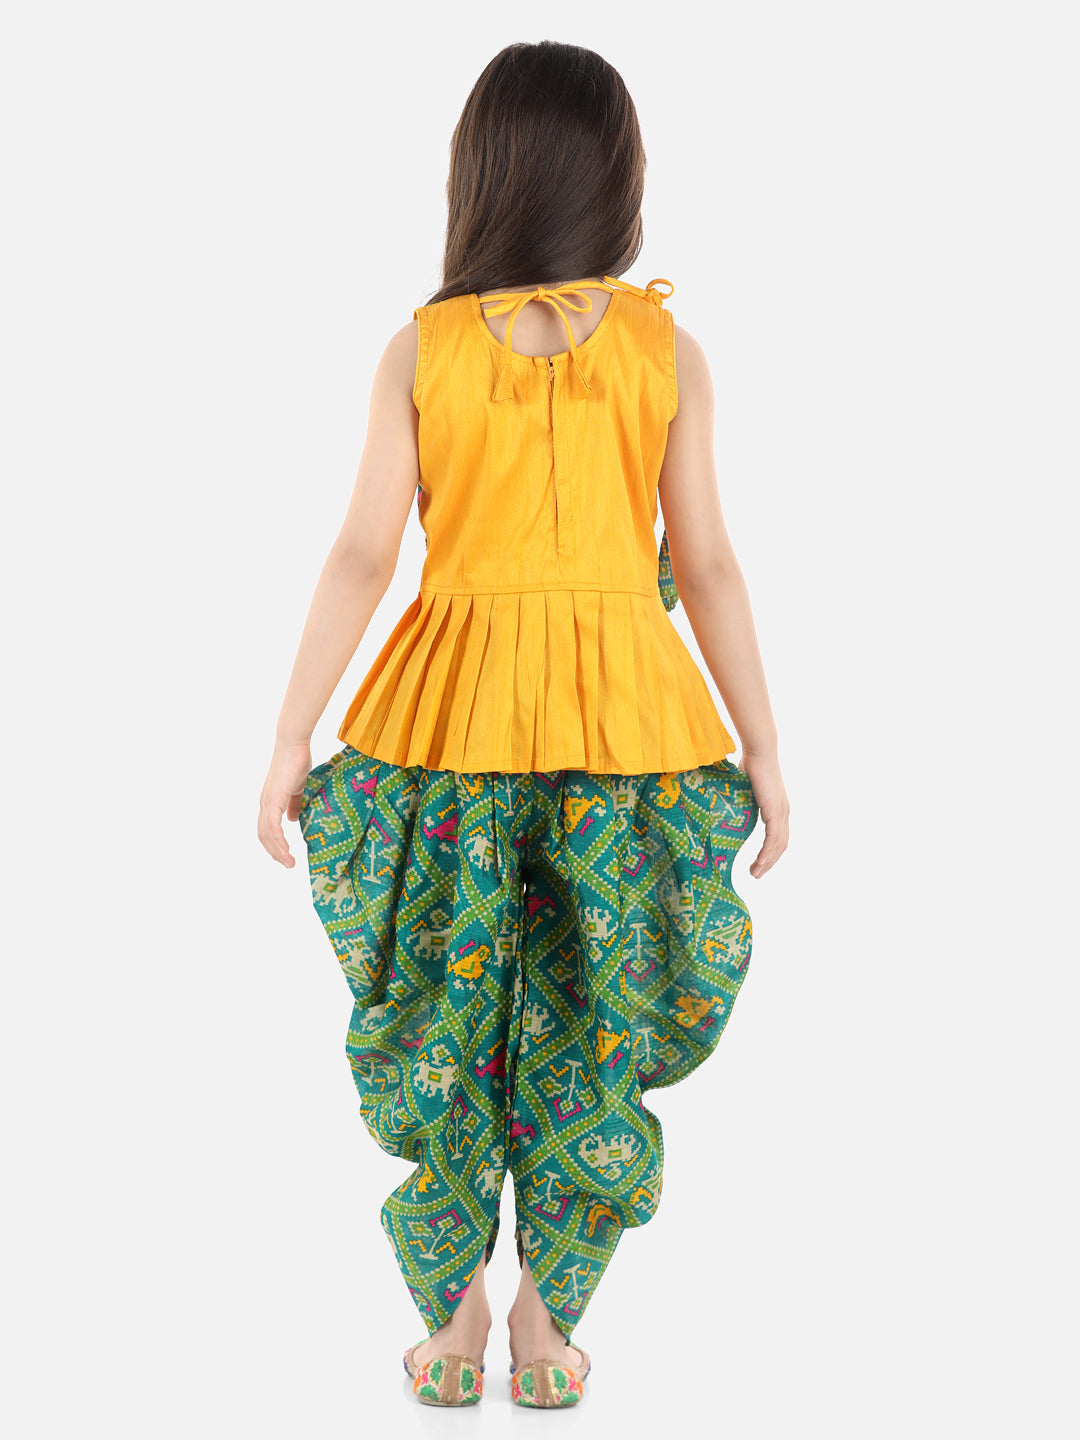 BownBee Sibling set of Patan Patola Jacket Kurta Pajama and Patch Top and Dhoti-Yellow